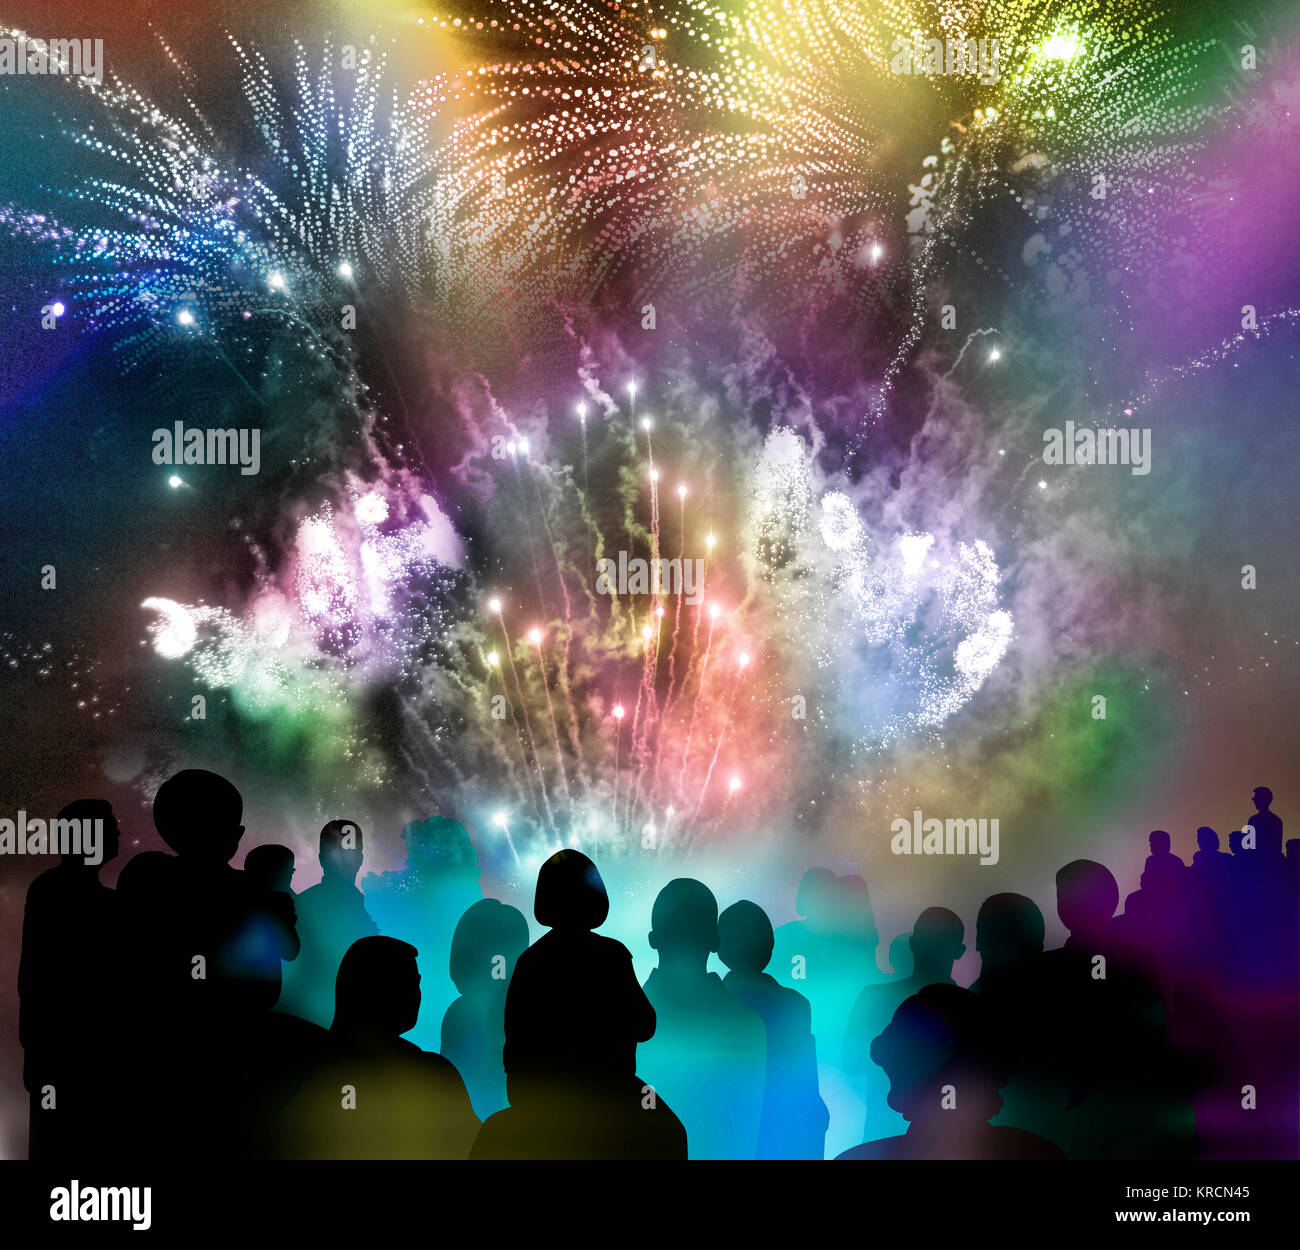 nächtliches Feuerwerk mit bunten Licht- und Glitzermustern und illustrierten Zuschauer-Silhouetten, Mixed Media Stock Photo